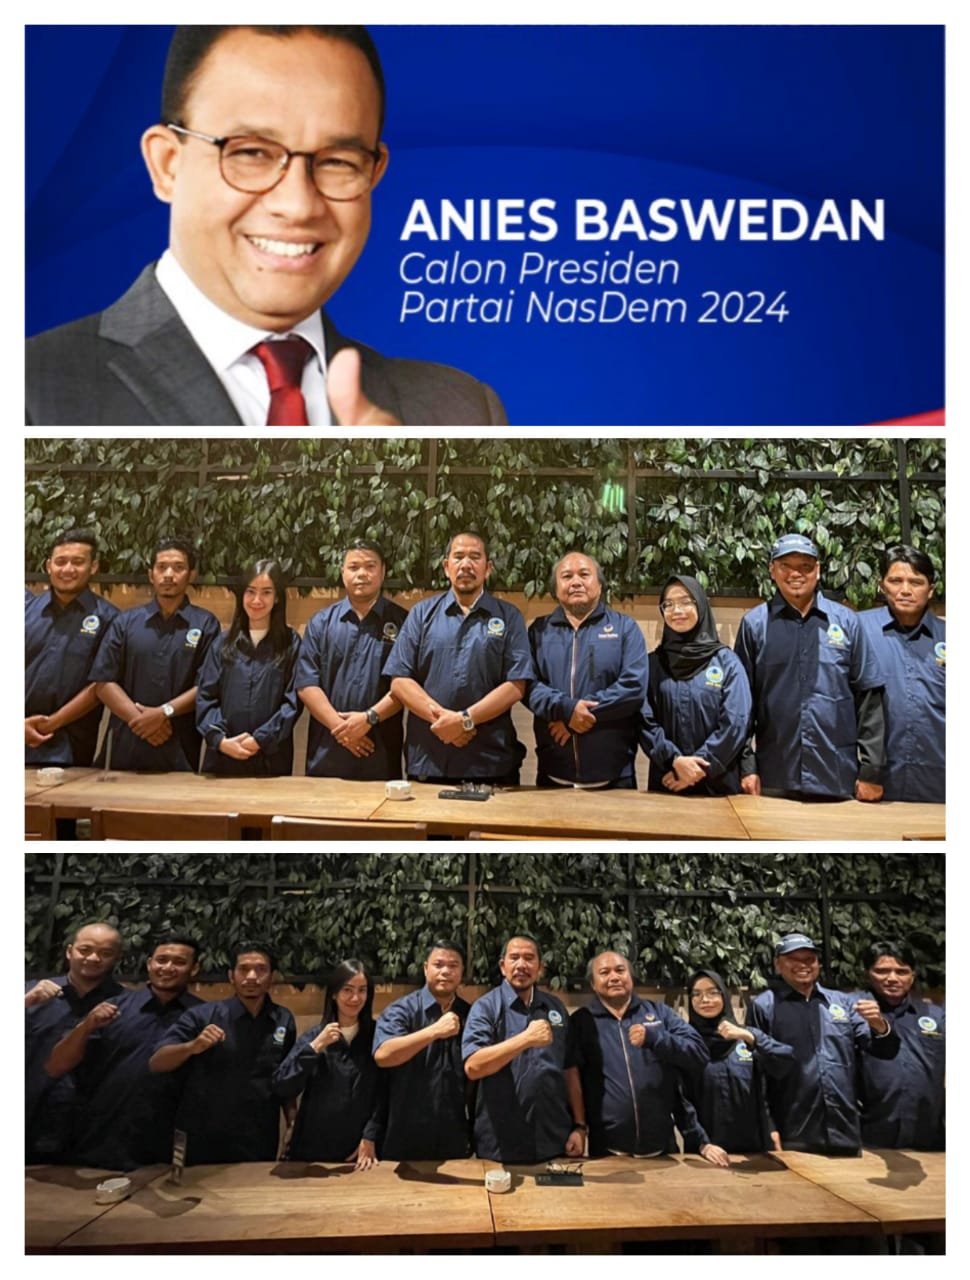 Anies Baswedan Calon Presiden Dari Partai Nasdem, DPW Garpu Riau Siap Dukung Penuh